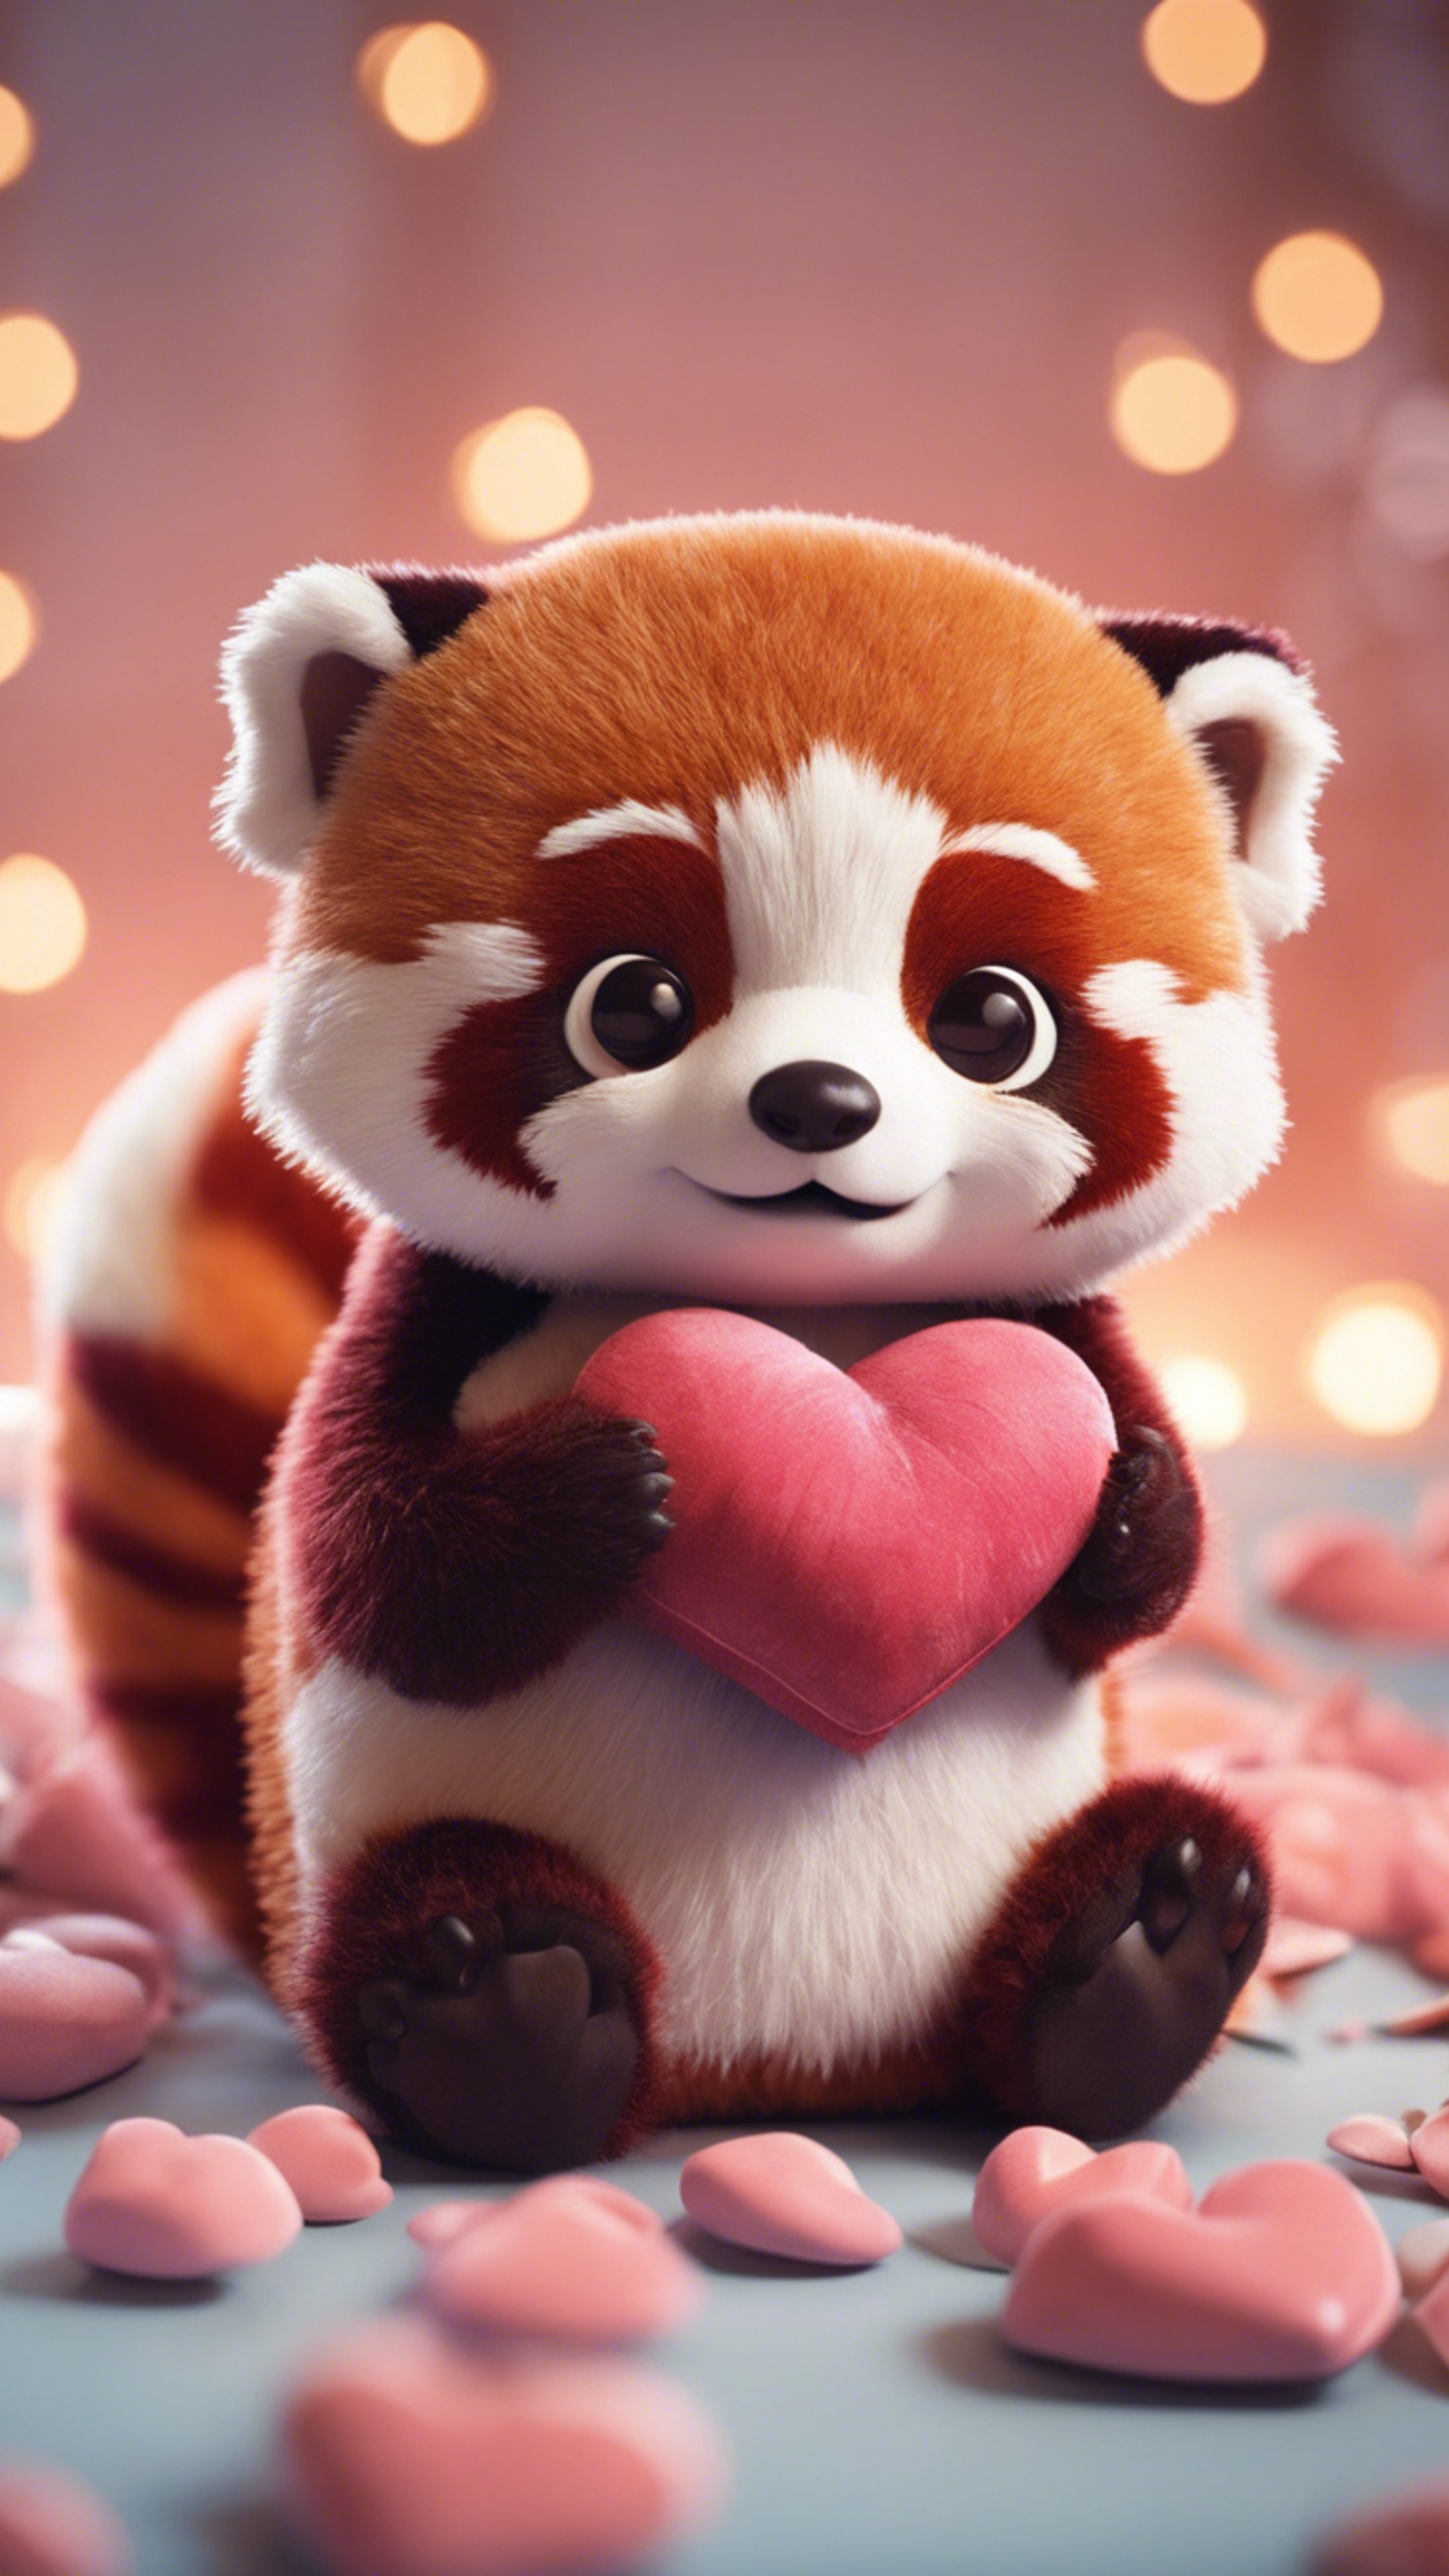 A kawaii red panda, wide-eyed, hugging a heart-shaped pillow. Шпалери[45d6f15b7fce49d58985]